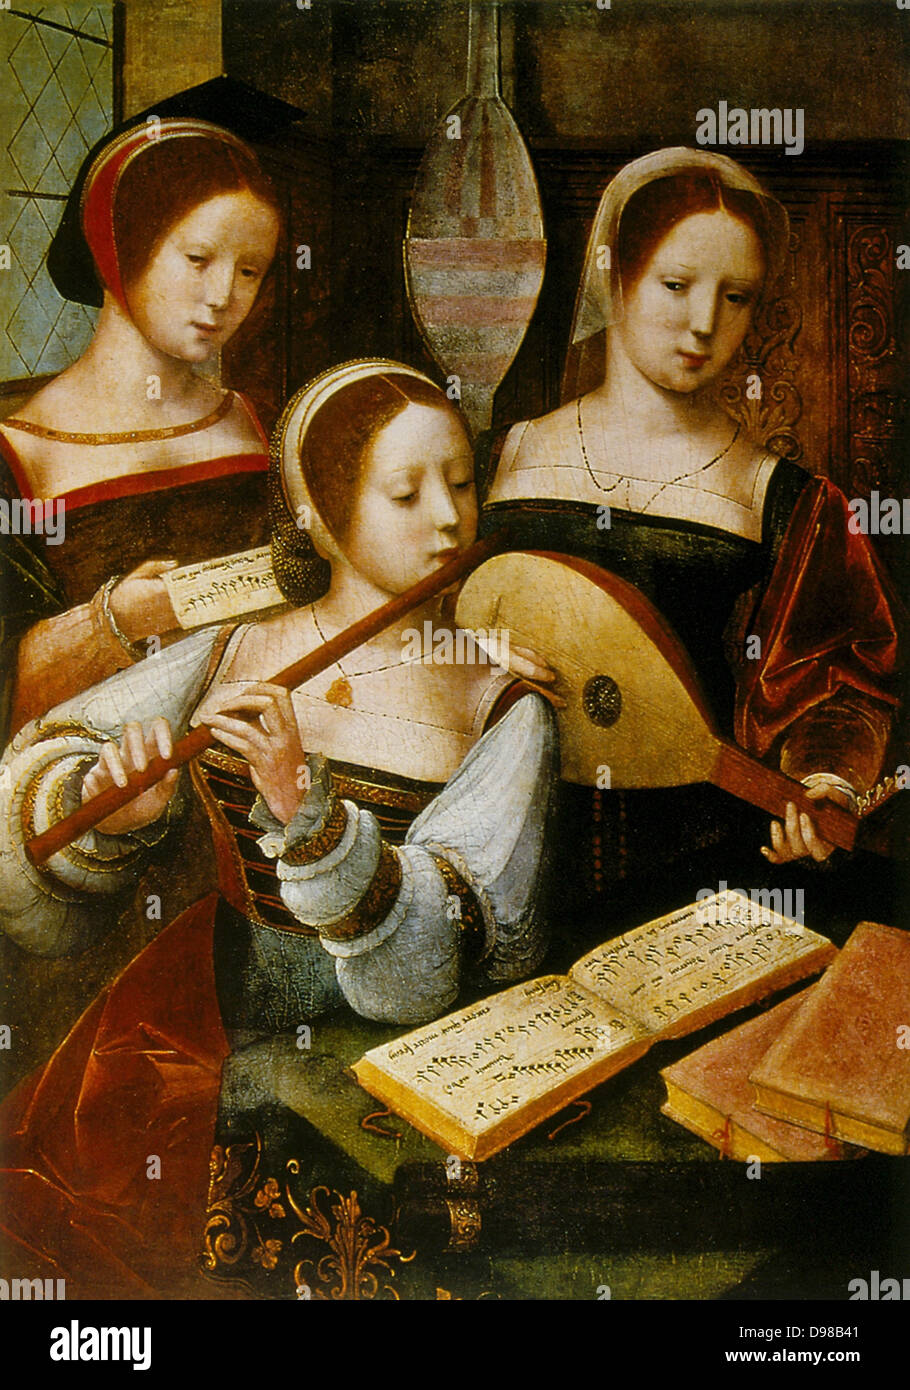 Dame Musicians' : les deux en face jouent de la flûte et le luth( ?). 16e siècle anonyme. Huile sur bois. Banque D'Images